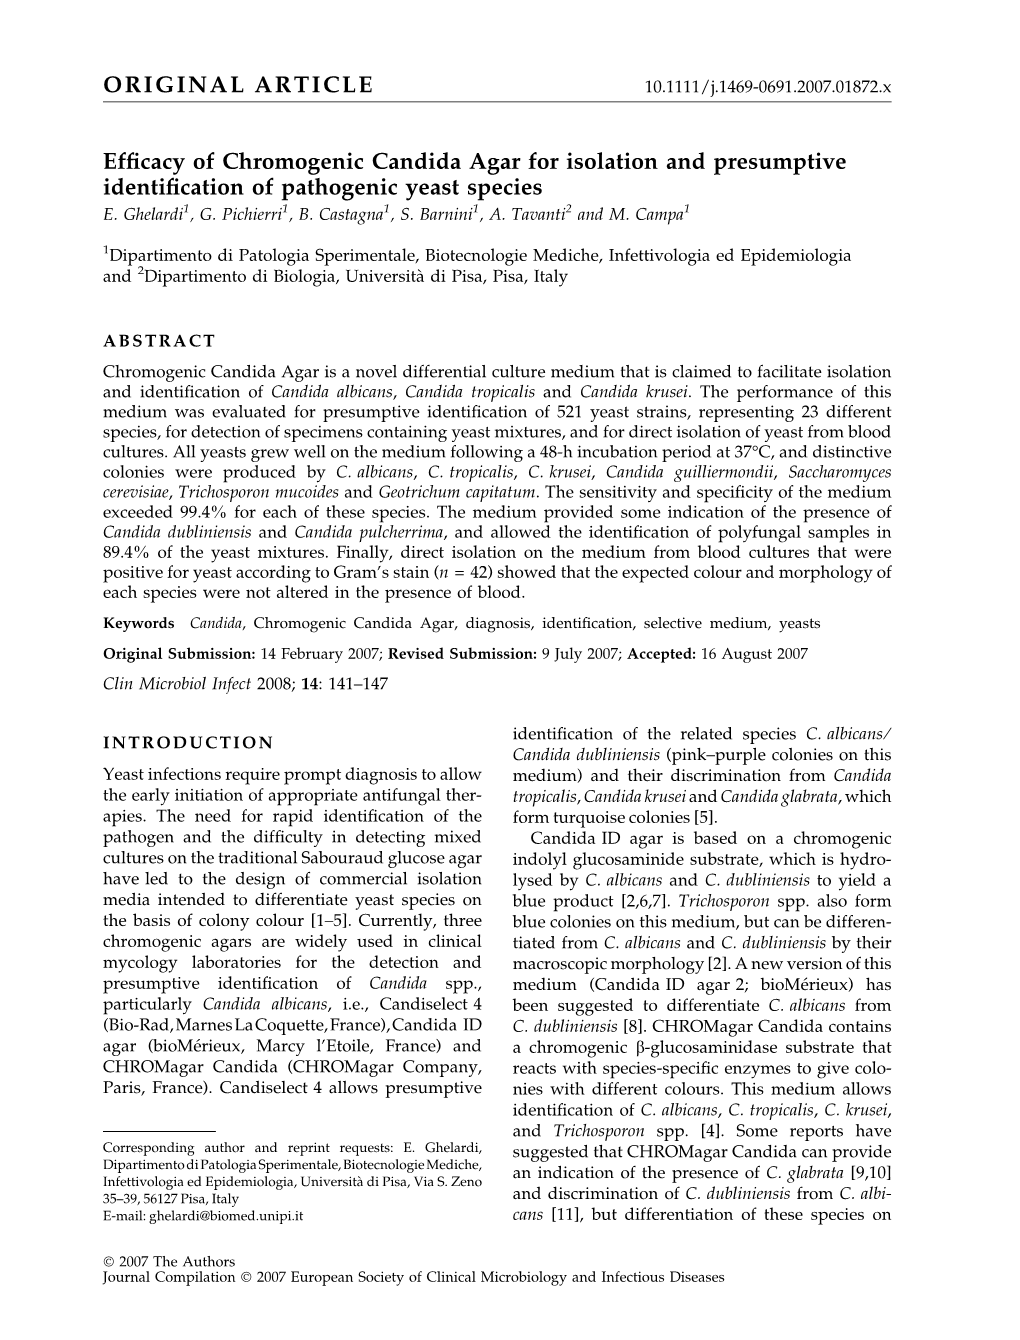 Efficacy of Chromogenic Candida Agar for Isolation and Presumptive